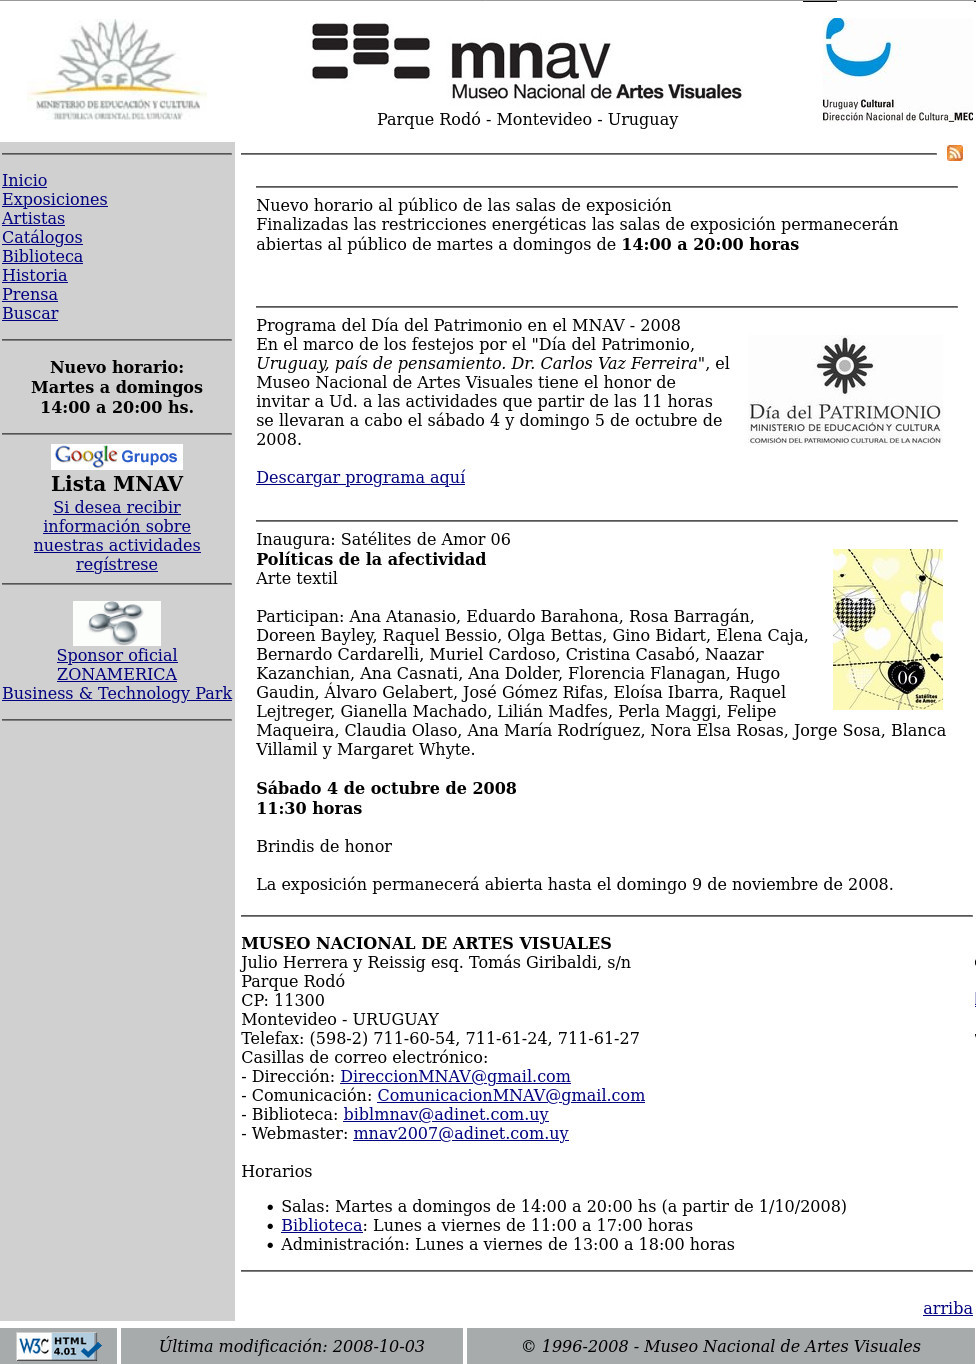 Historia de nuestra web - Museo Nacional de Artes Visuales - Diseño 2008-2009. Dirección: Jacqueline Lacasa